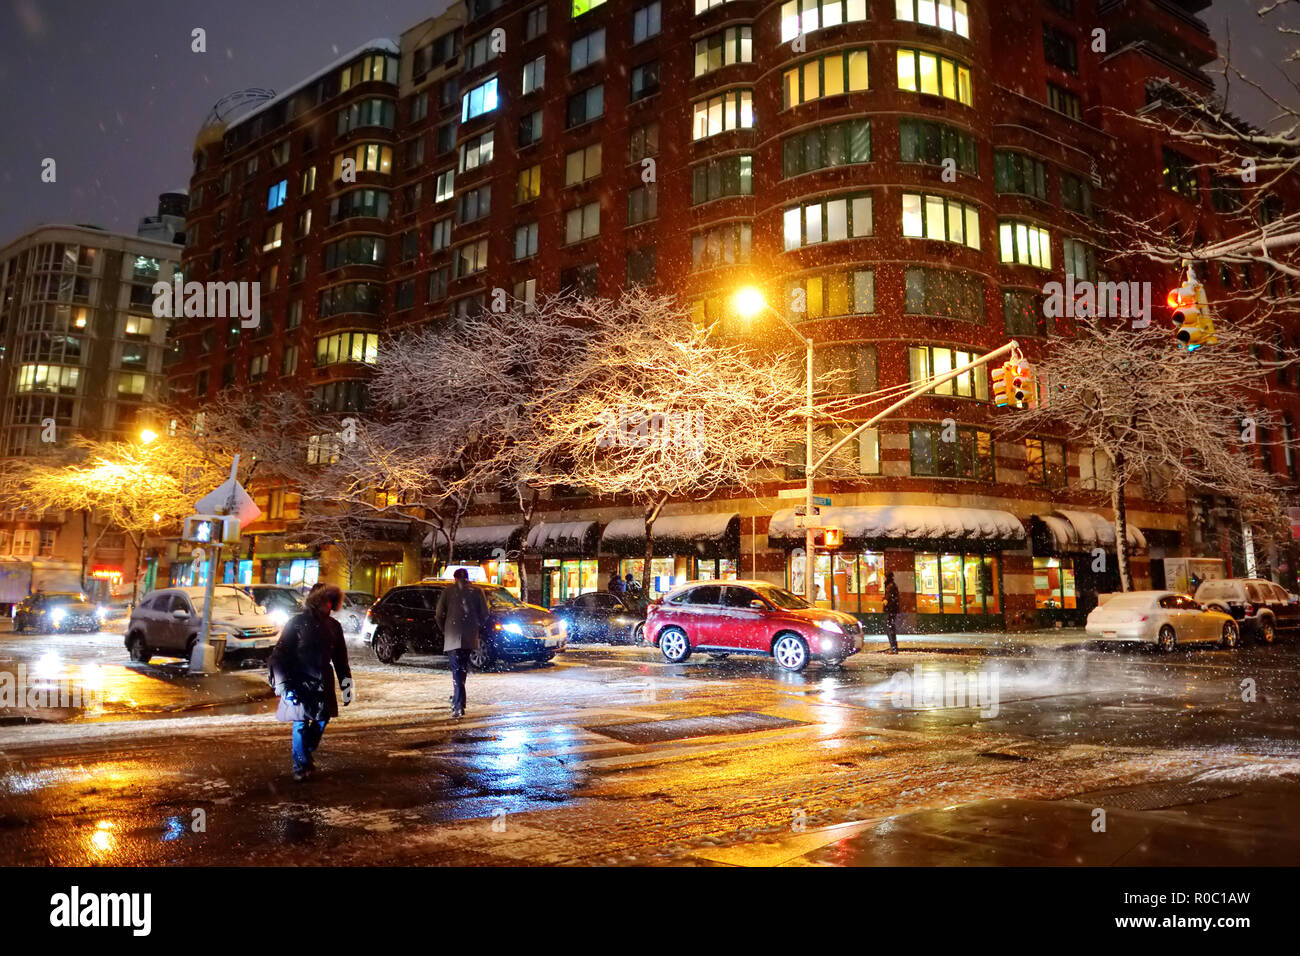 NEW YORK - 19. MÄRZ 2015: schöne verschneite New York Straßen nach massiven Schneefall in der Nacht. Reisen in den USA. Stockfoto